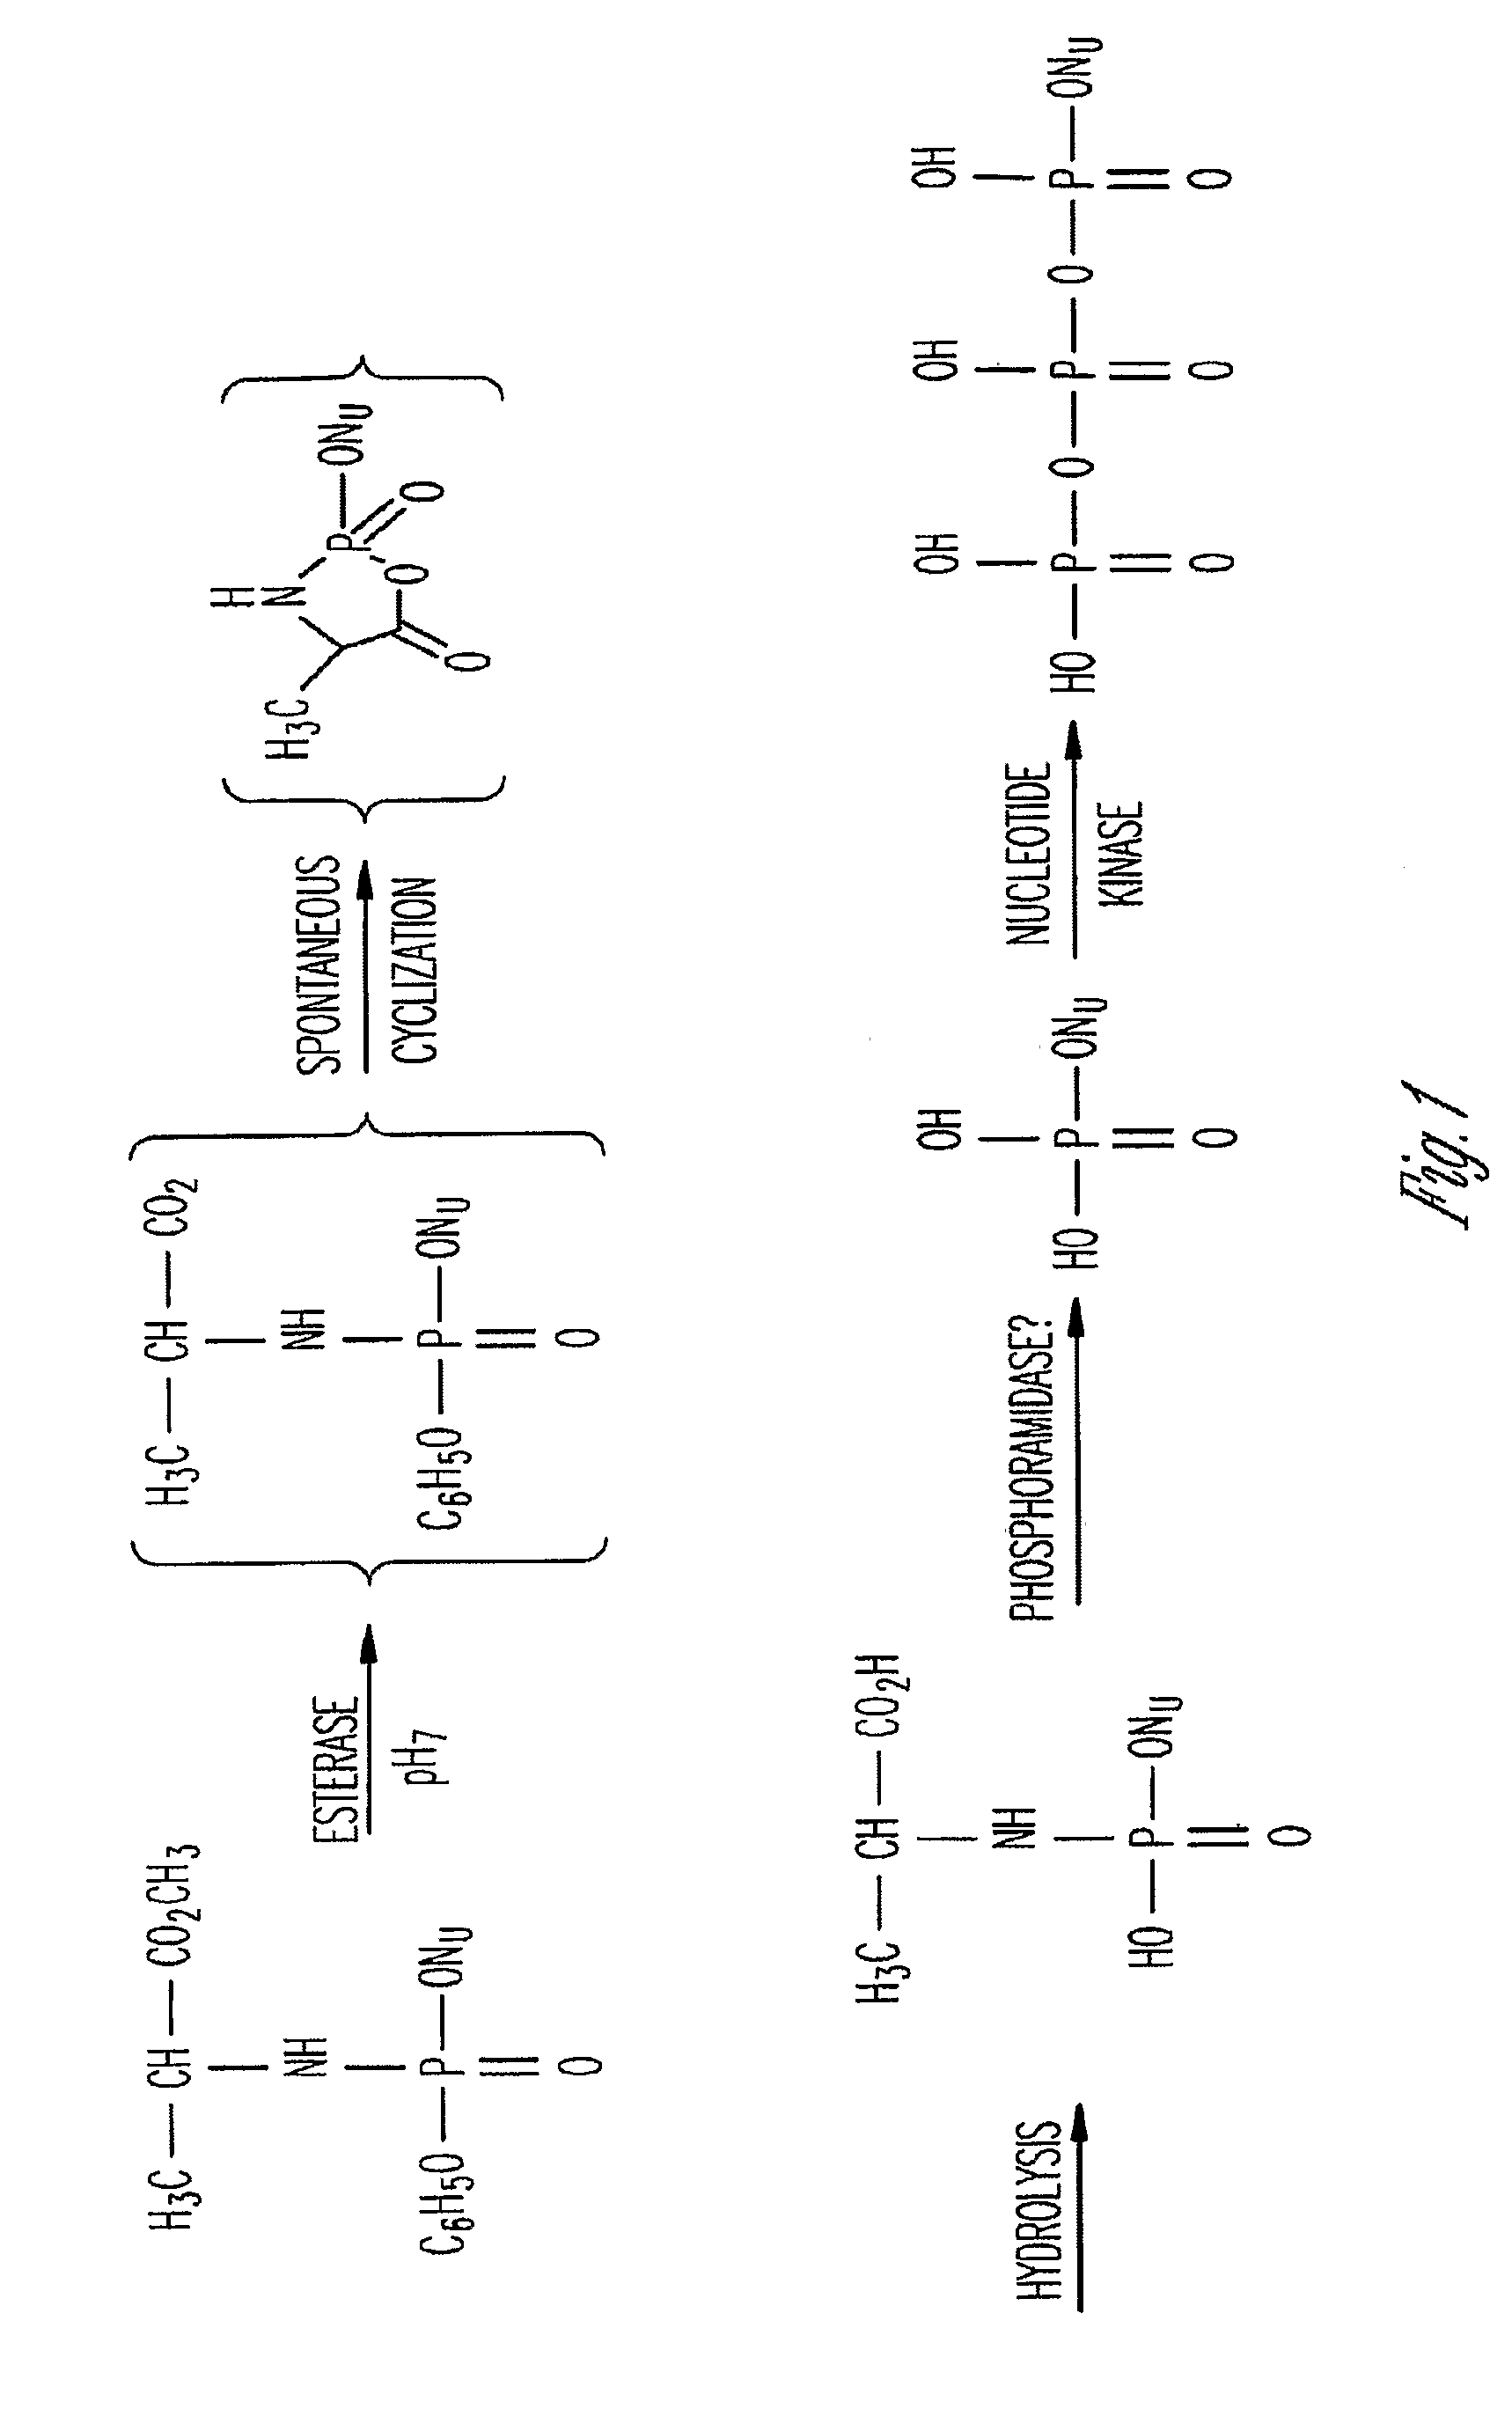 Phosphoramidate derivatives of FAU